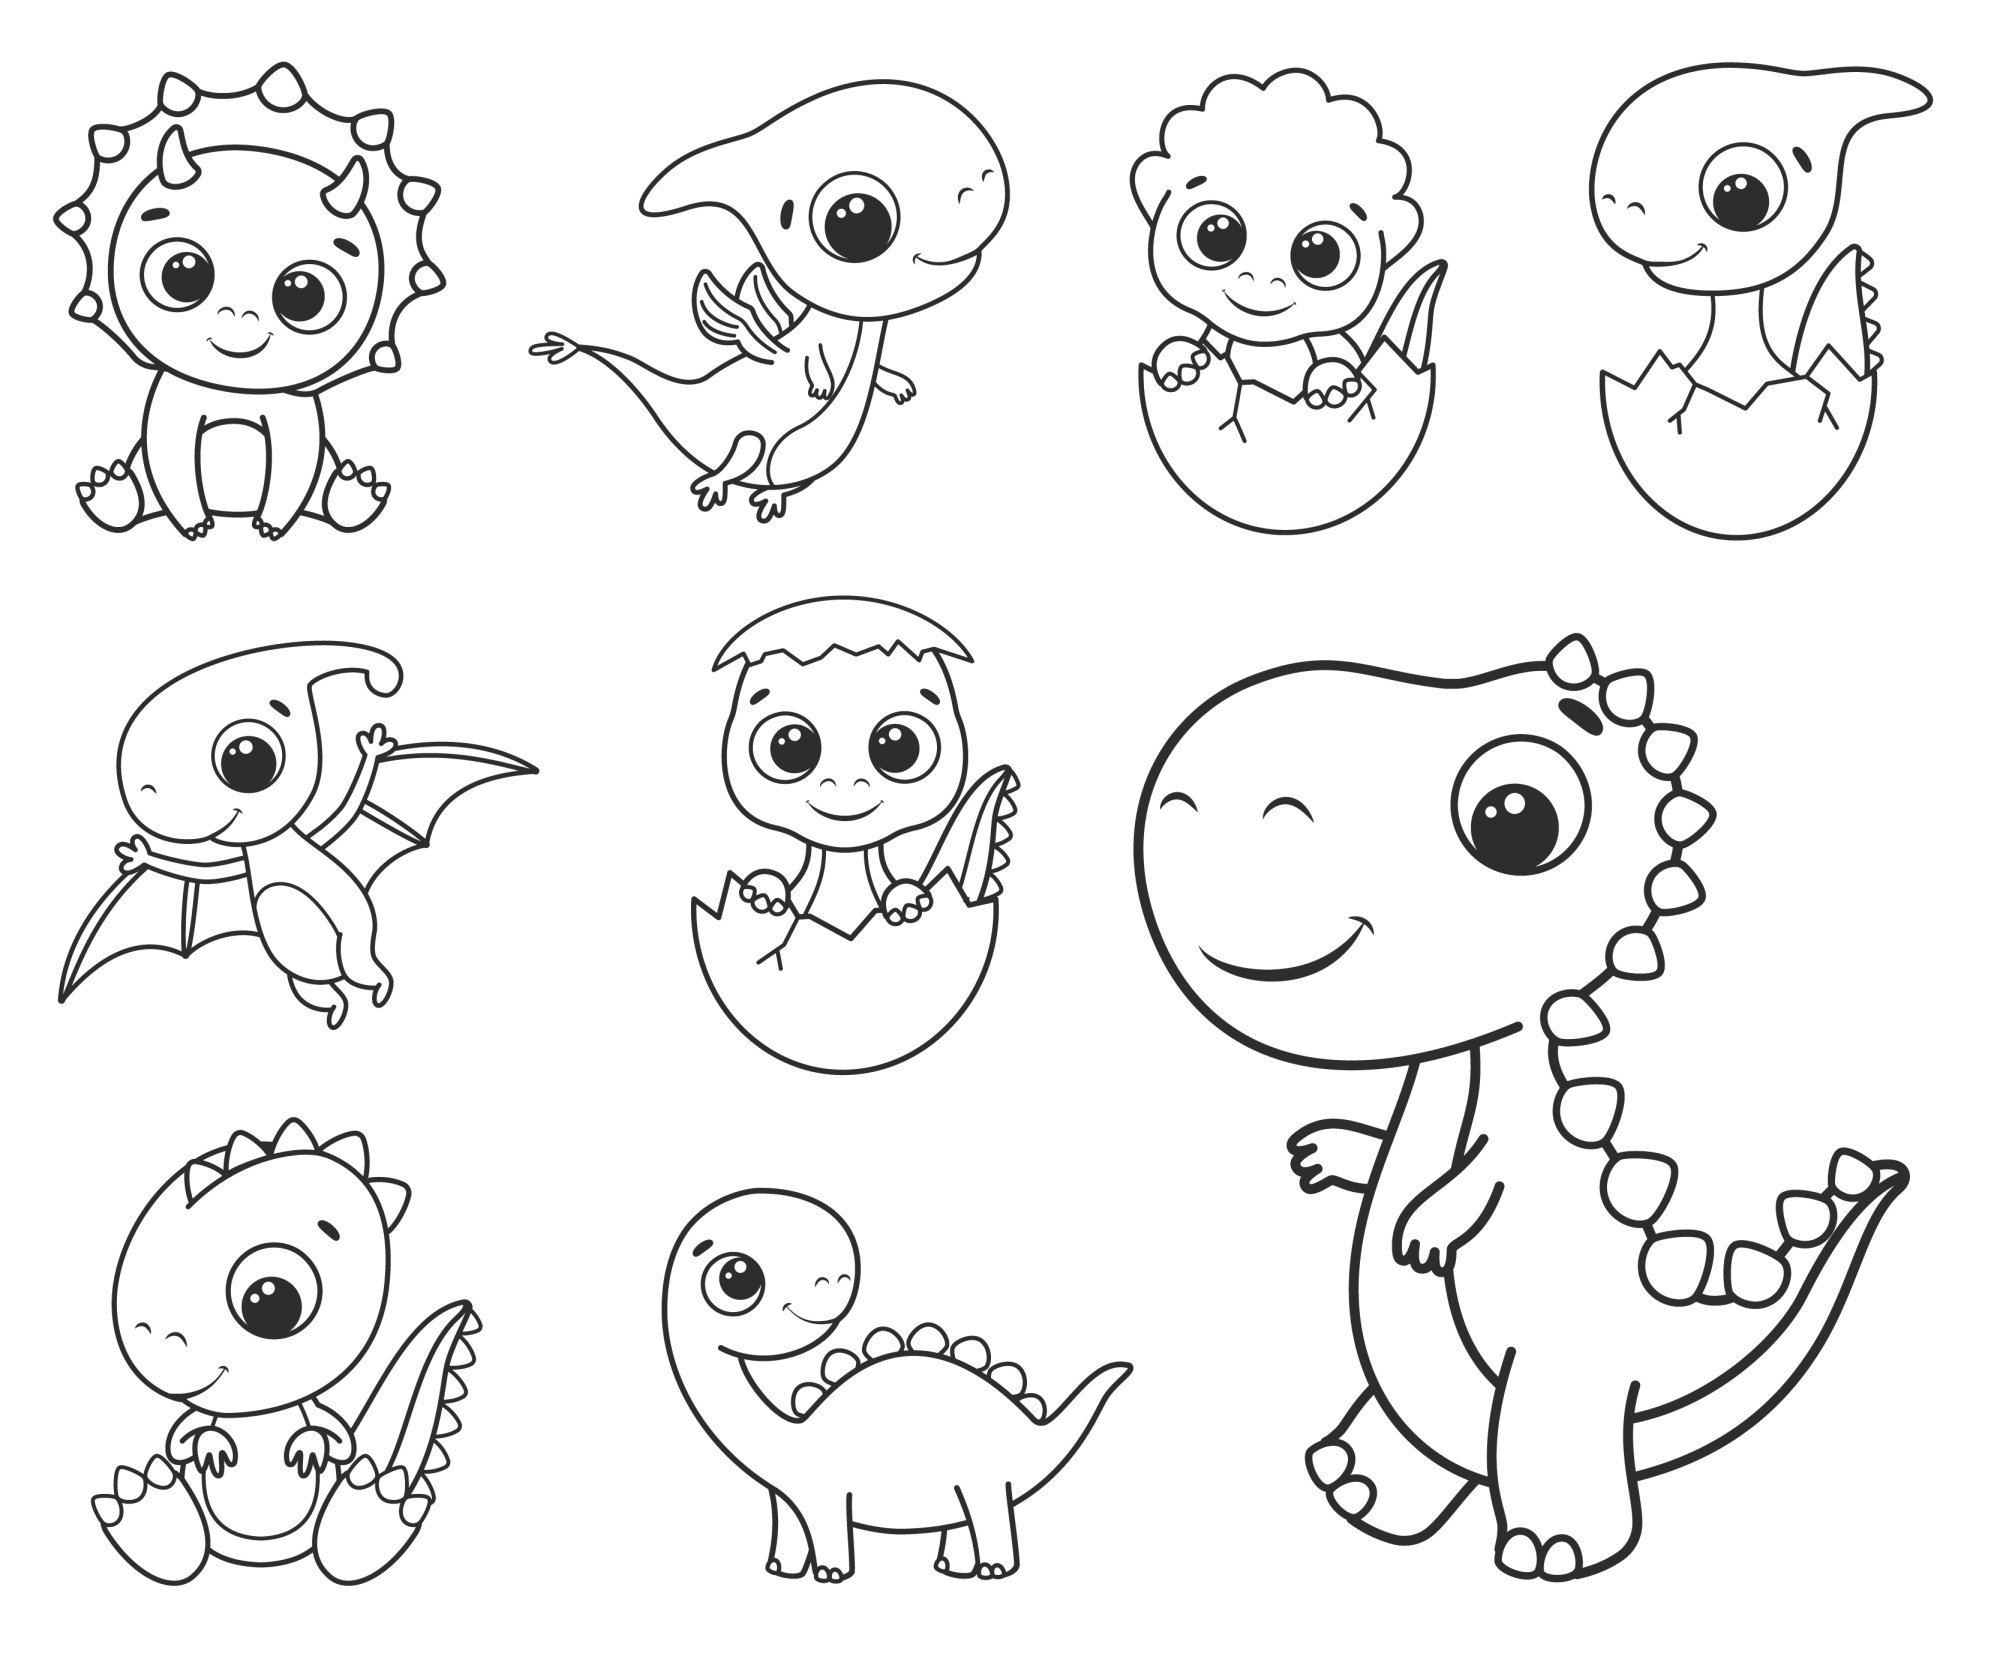 Раскраска для детей: набор милых мультяшных динозавров